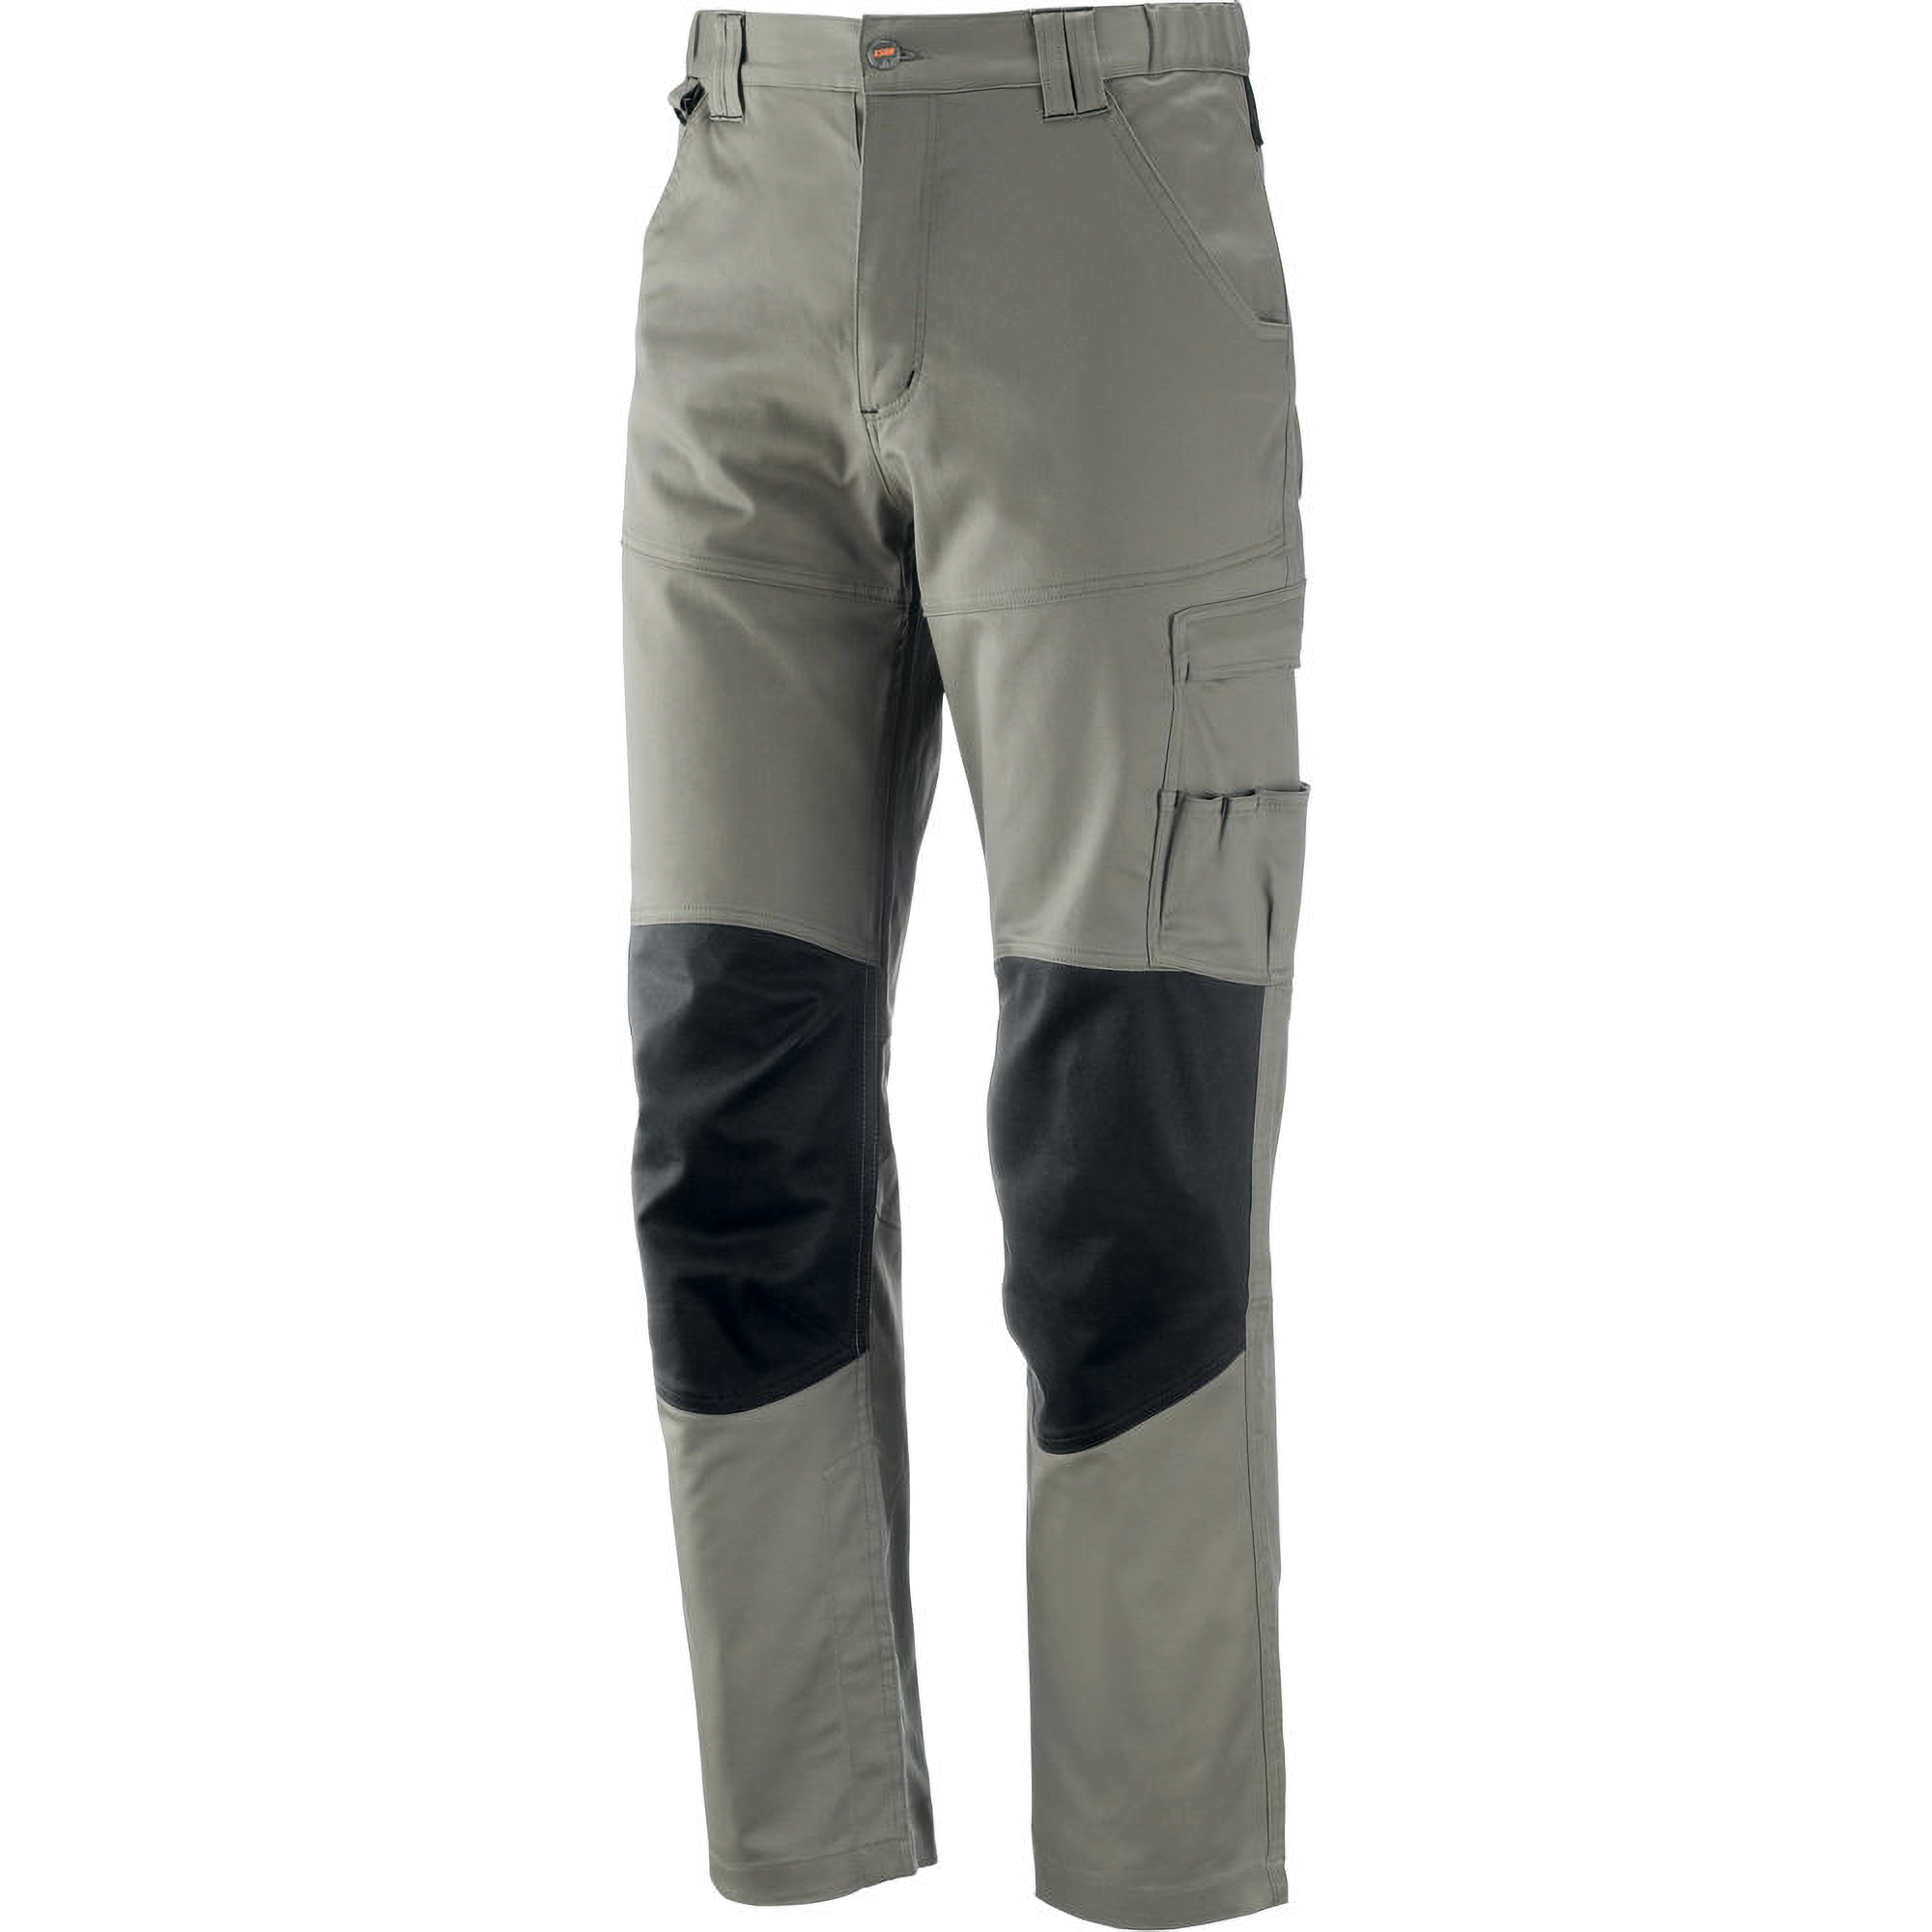 Pantalone da lavoro Neri Spa 437422, massima versatilit